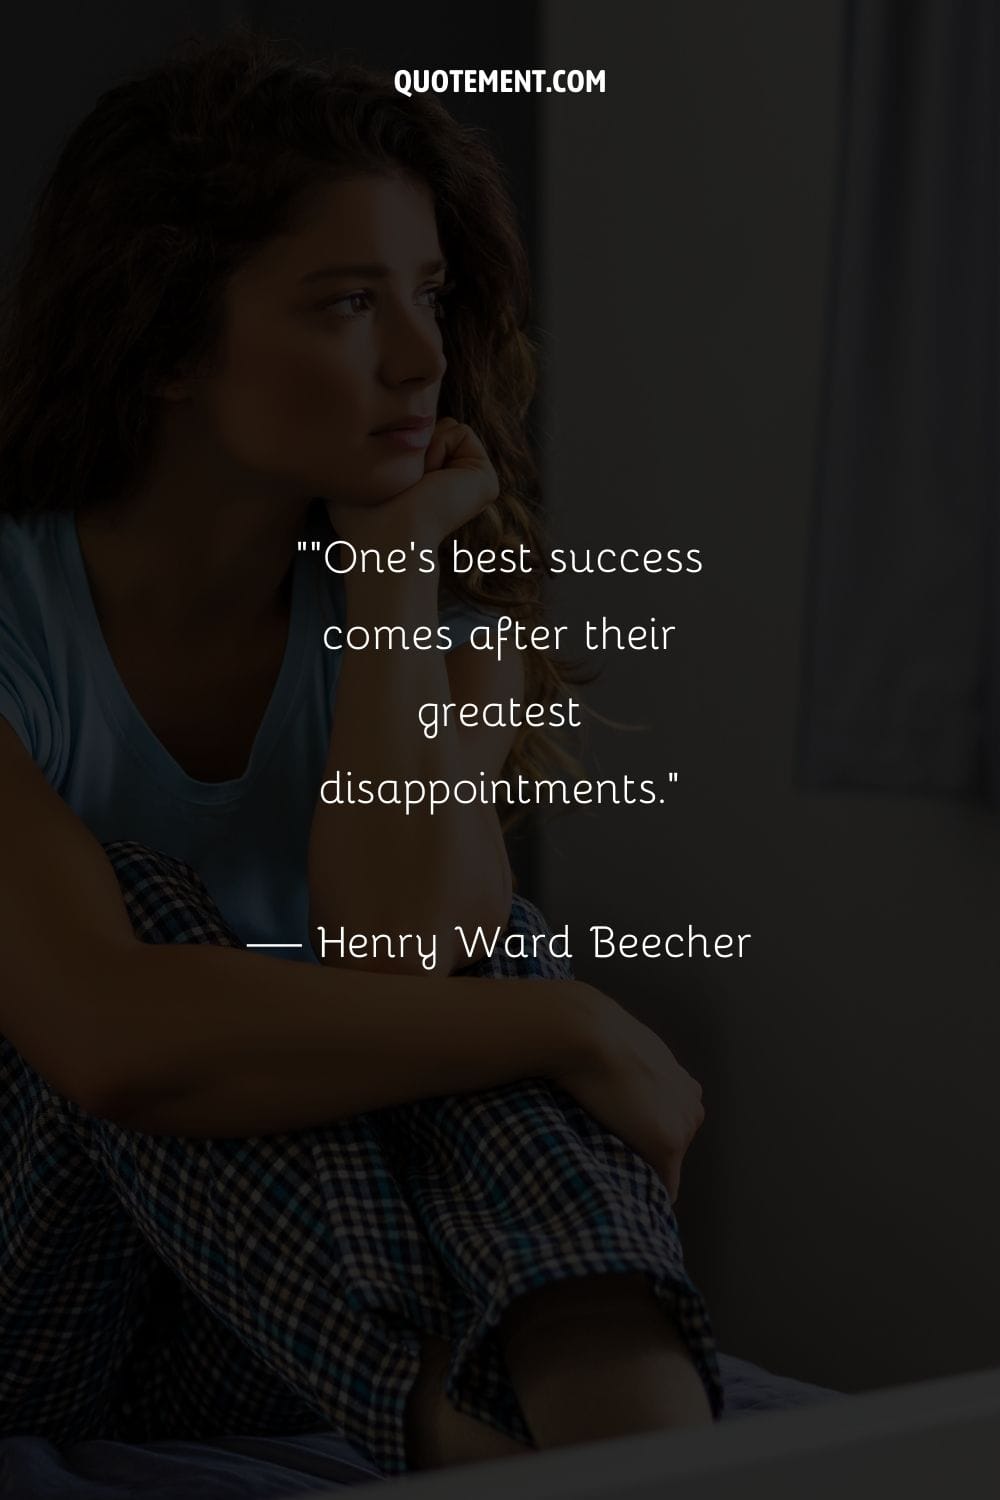 El mejor éxito de una persona llega después de sus mayores decepciones